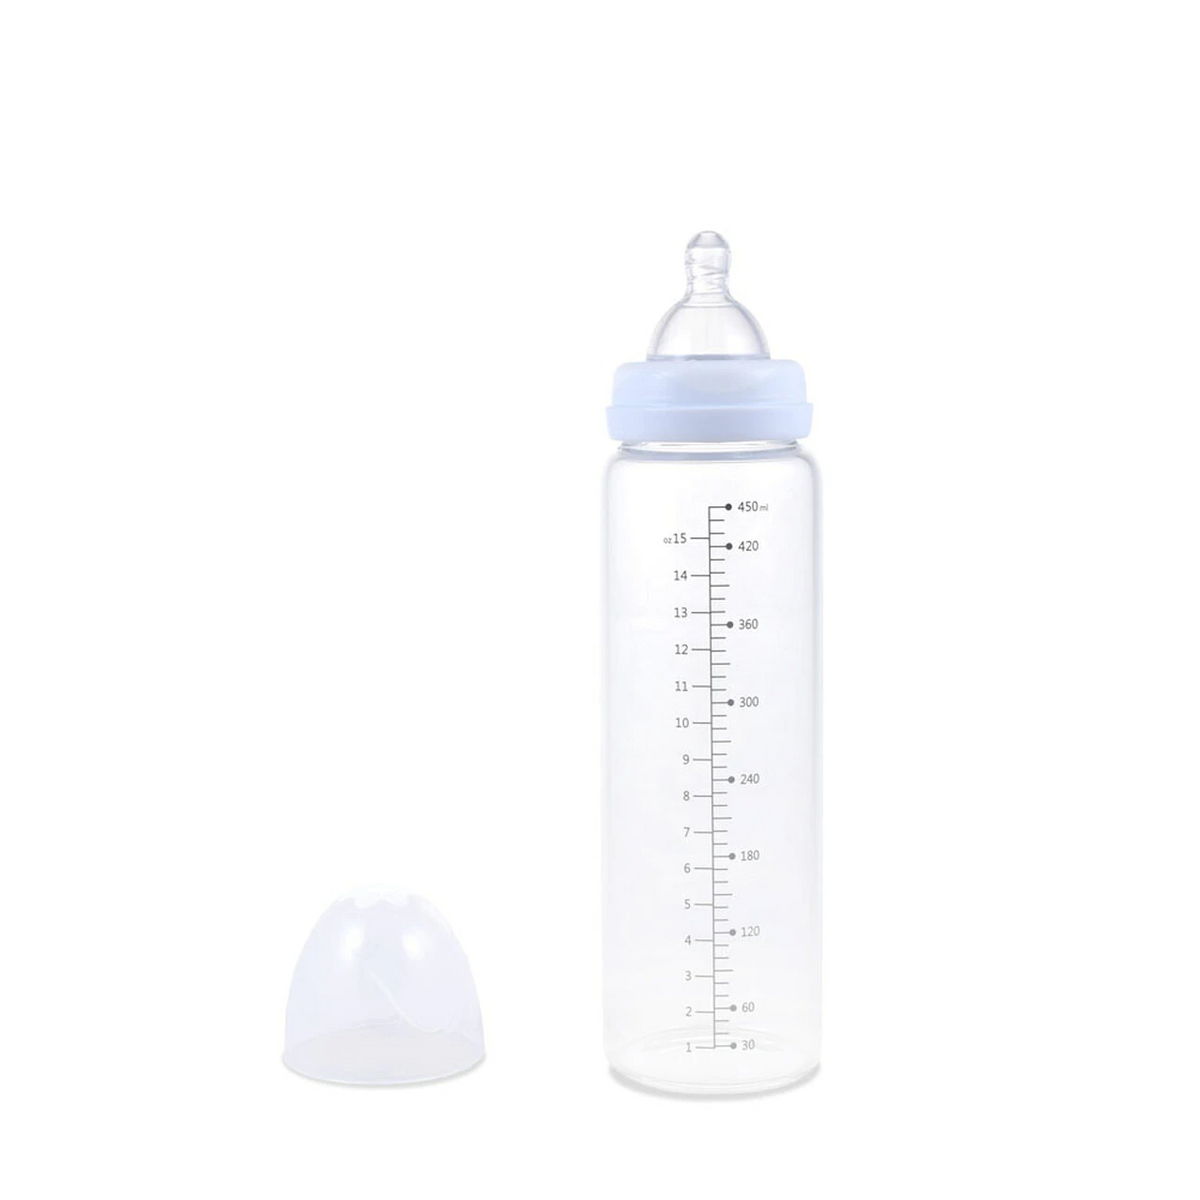 Skooldoodle Adult Baby Bottle – My Inner Baby